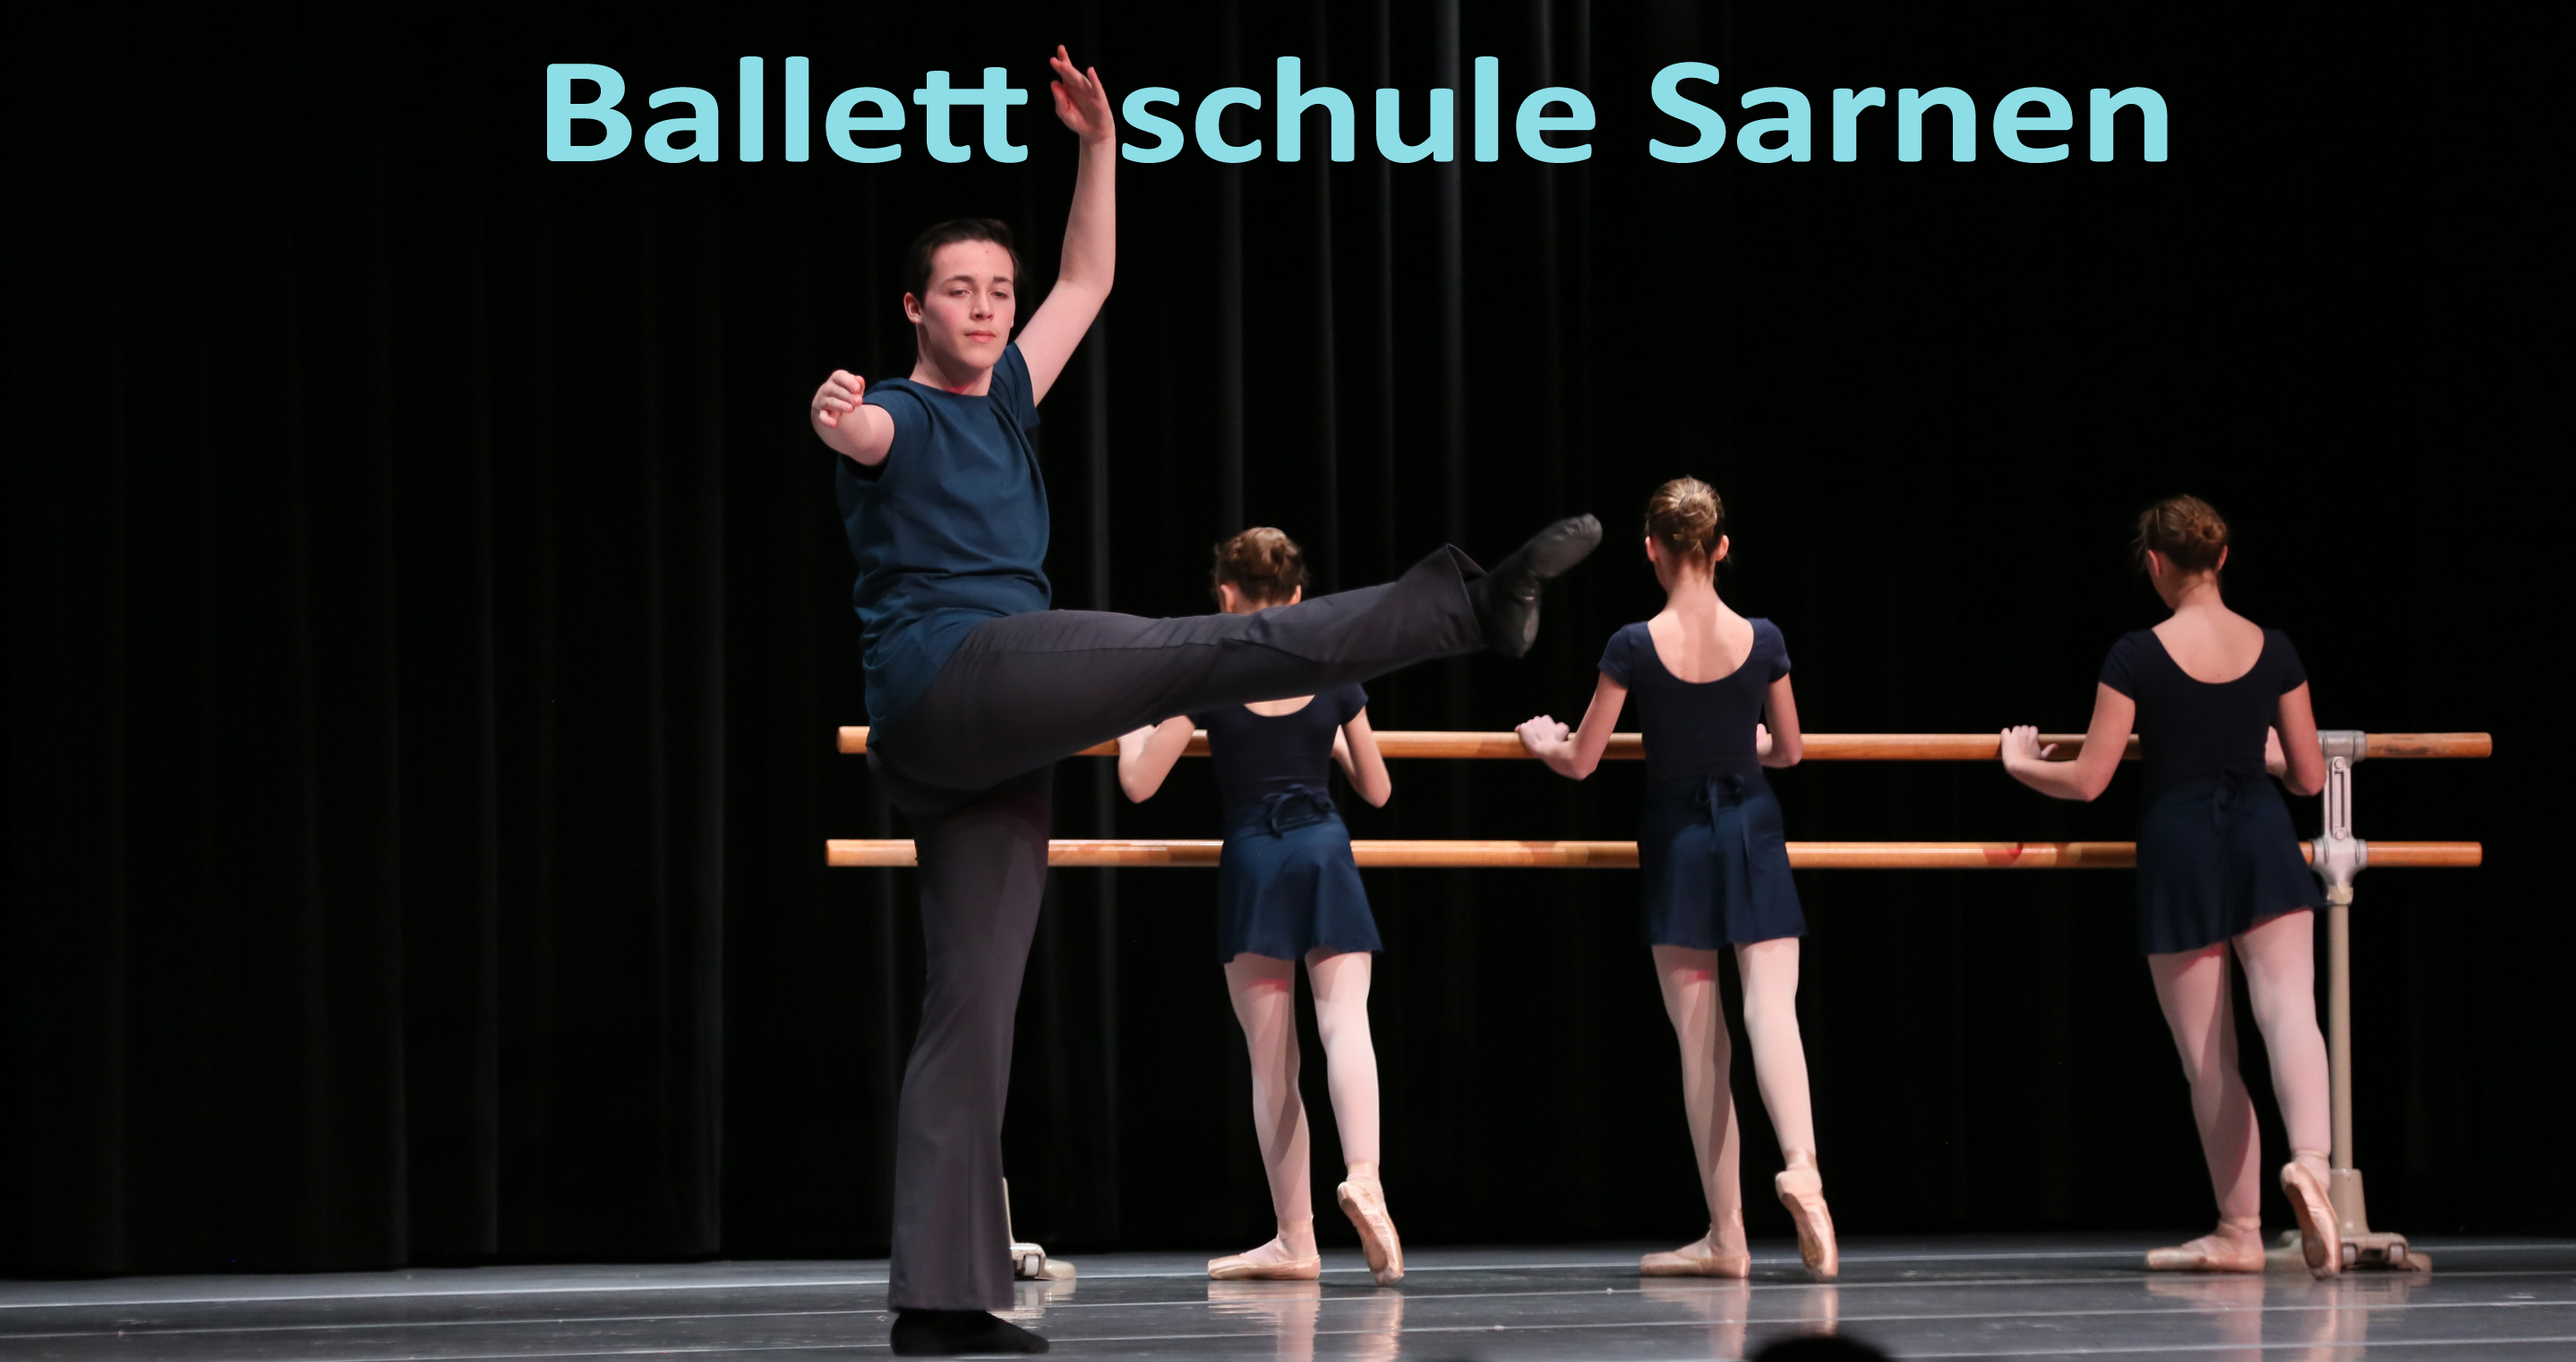 Ballettschule Sarnen,Stundenplan